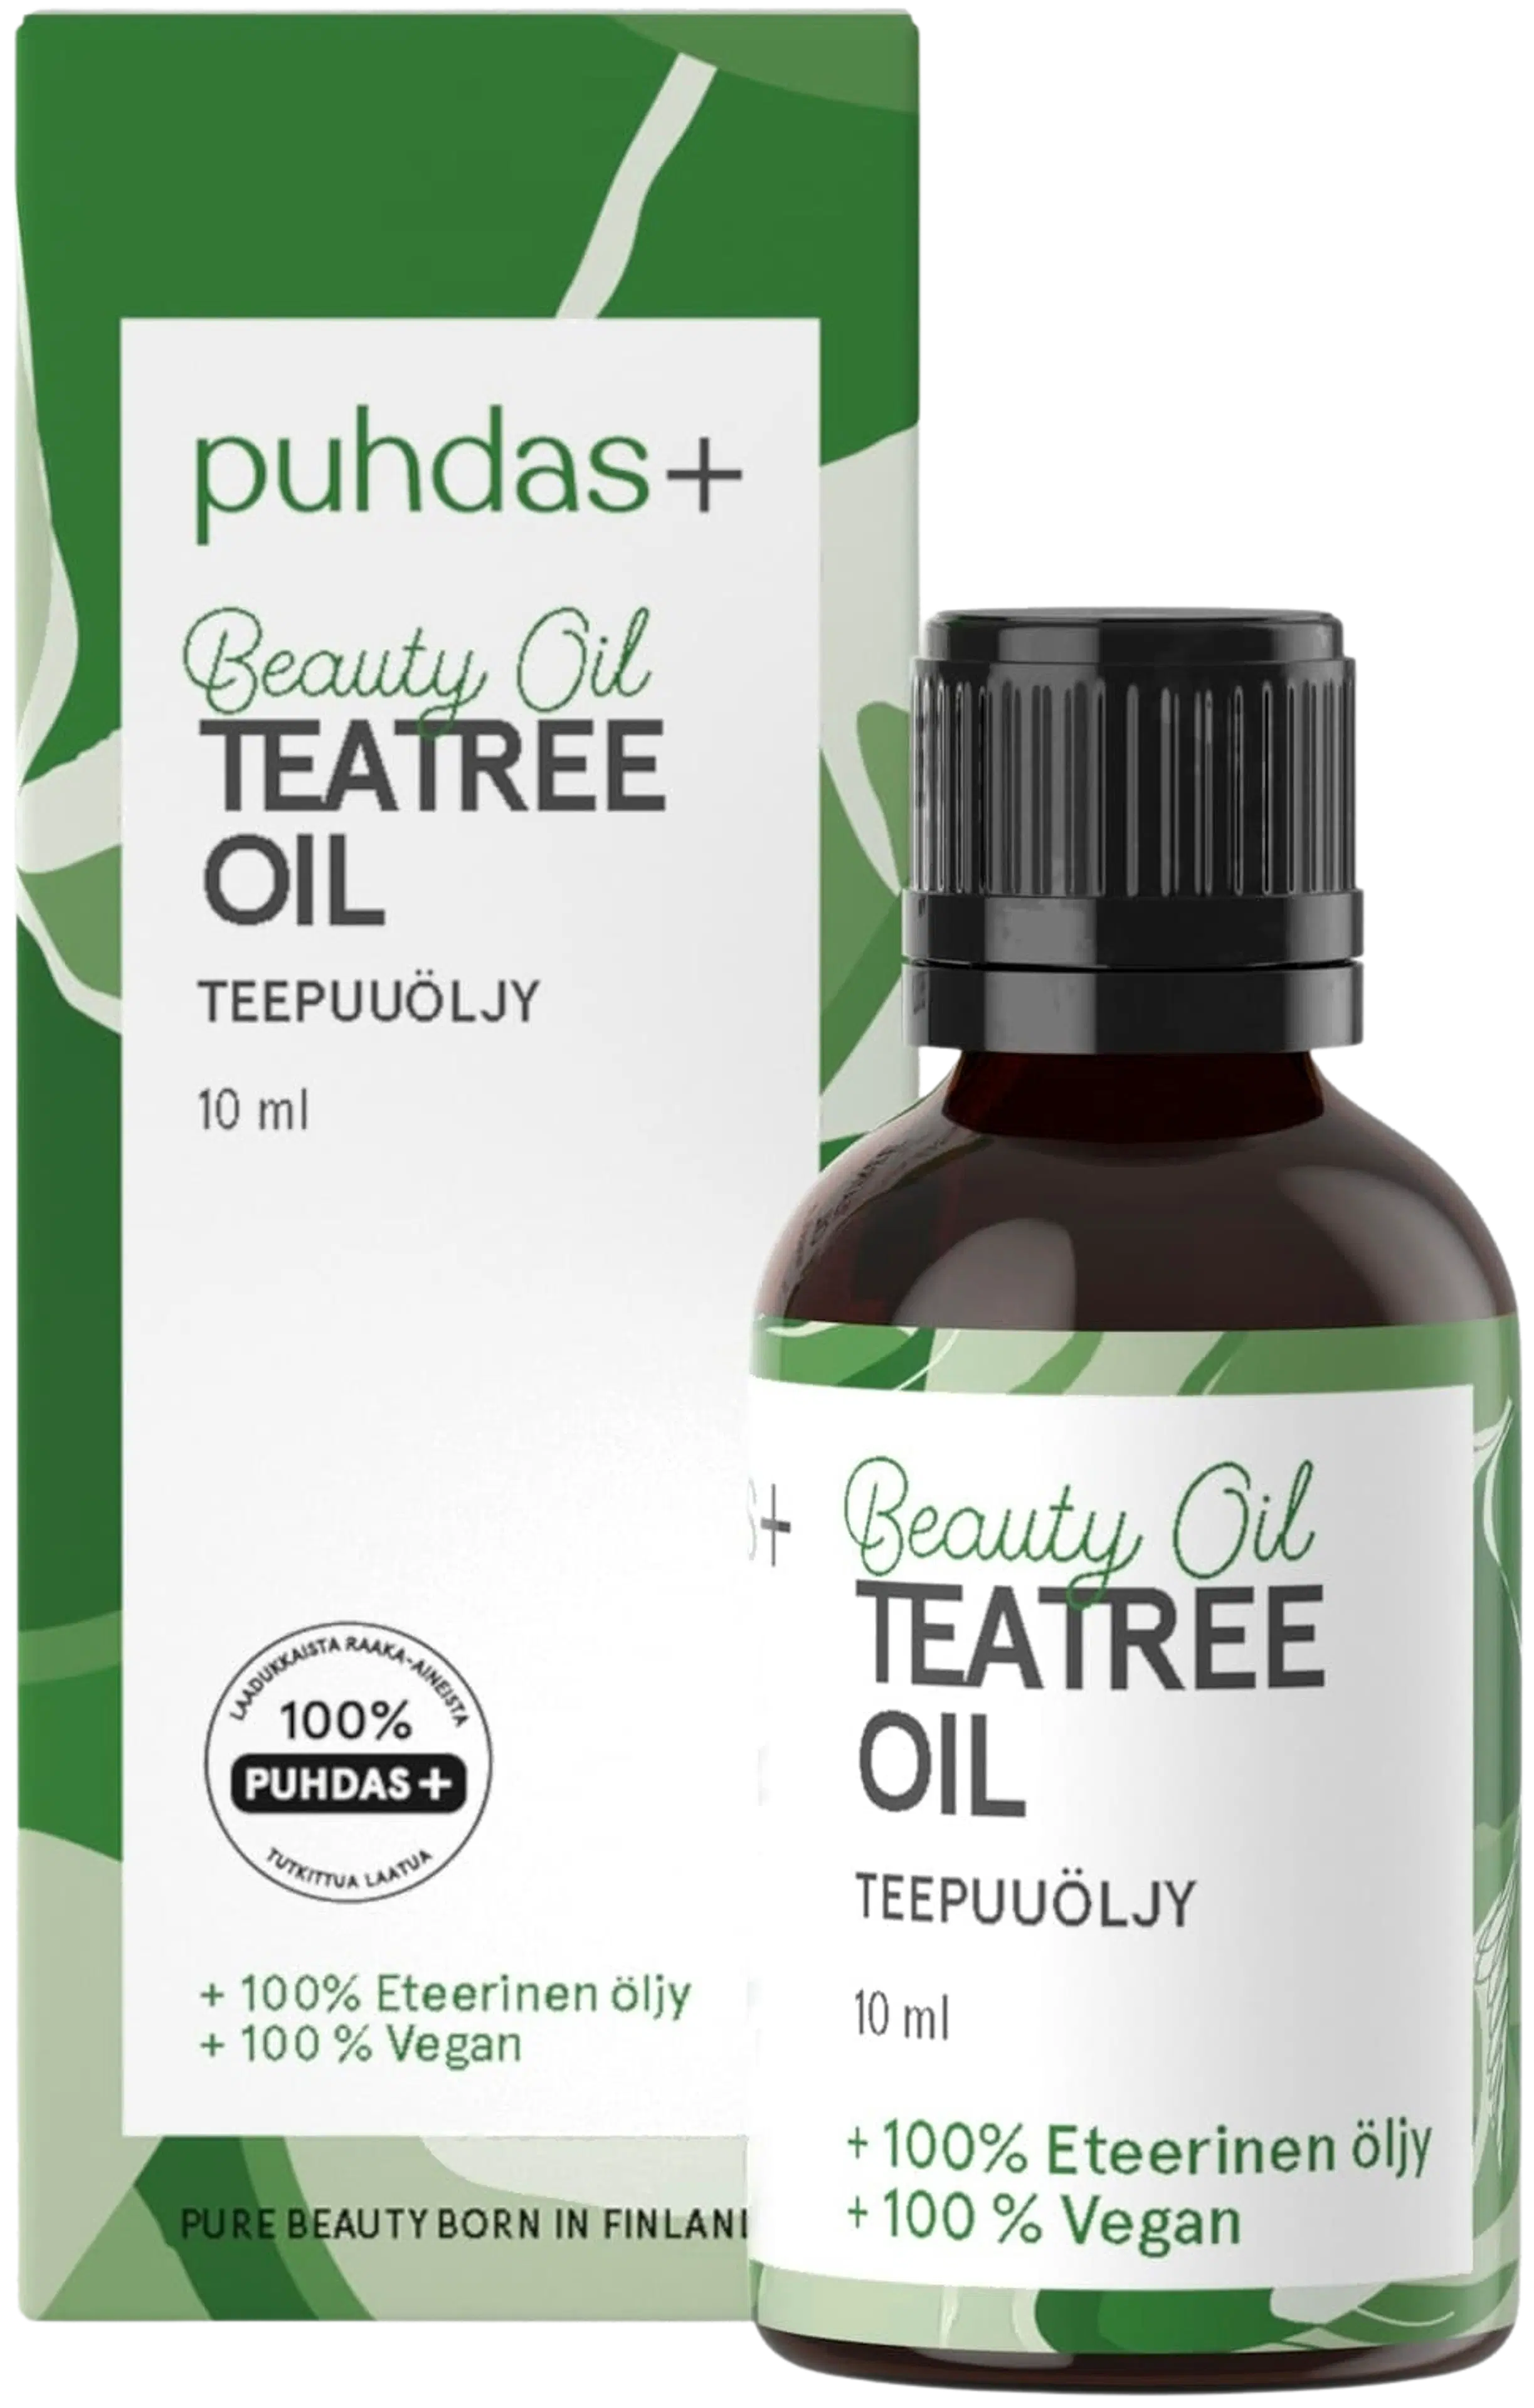 Puhdas+ Tea Tree Oil 10 ml